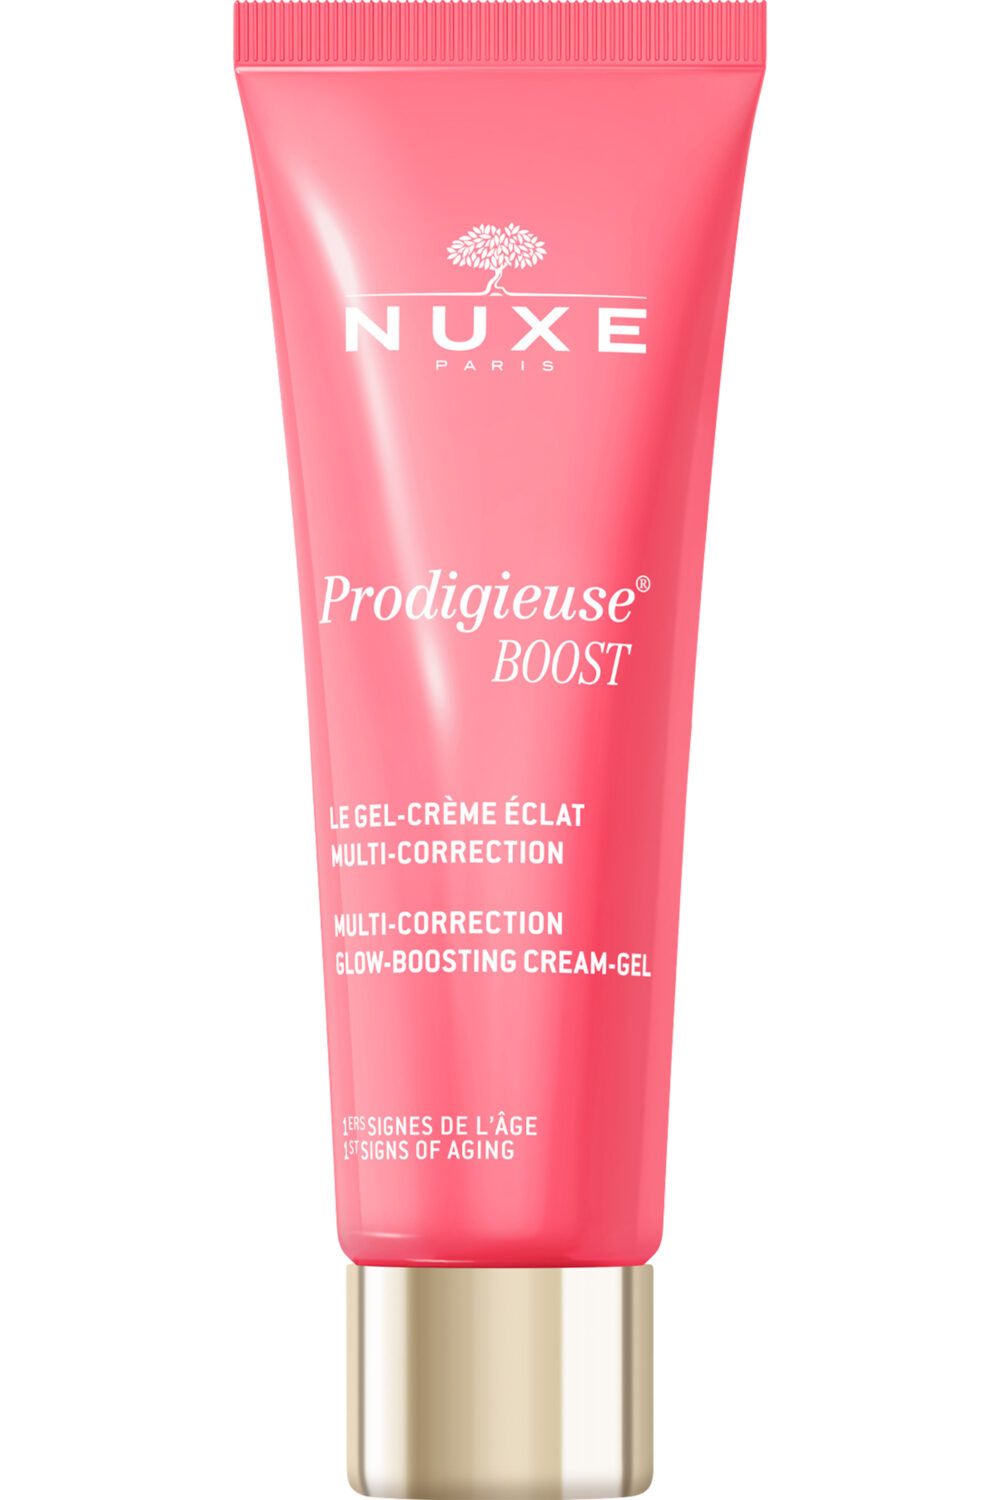 Nuxe - Gel-crème éclat multi-correction Prodigieuse® Boost